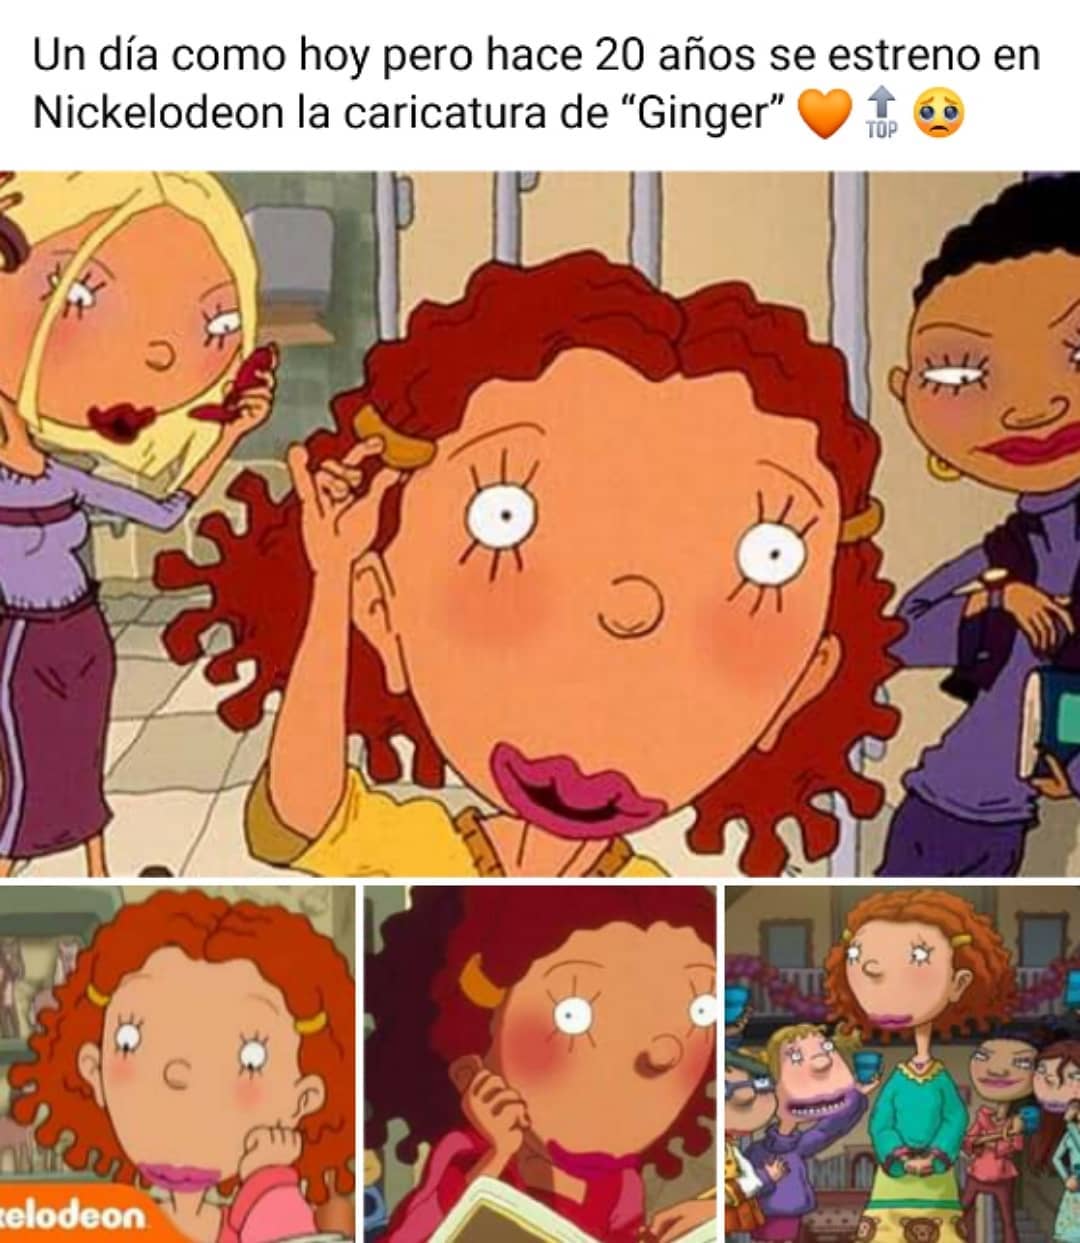 Un día como hoy pero hace 20 años se estrenó en Nickelodeon la caricatura de "Ginger".